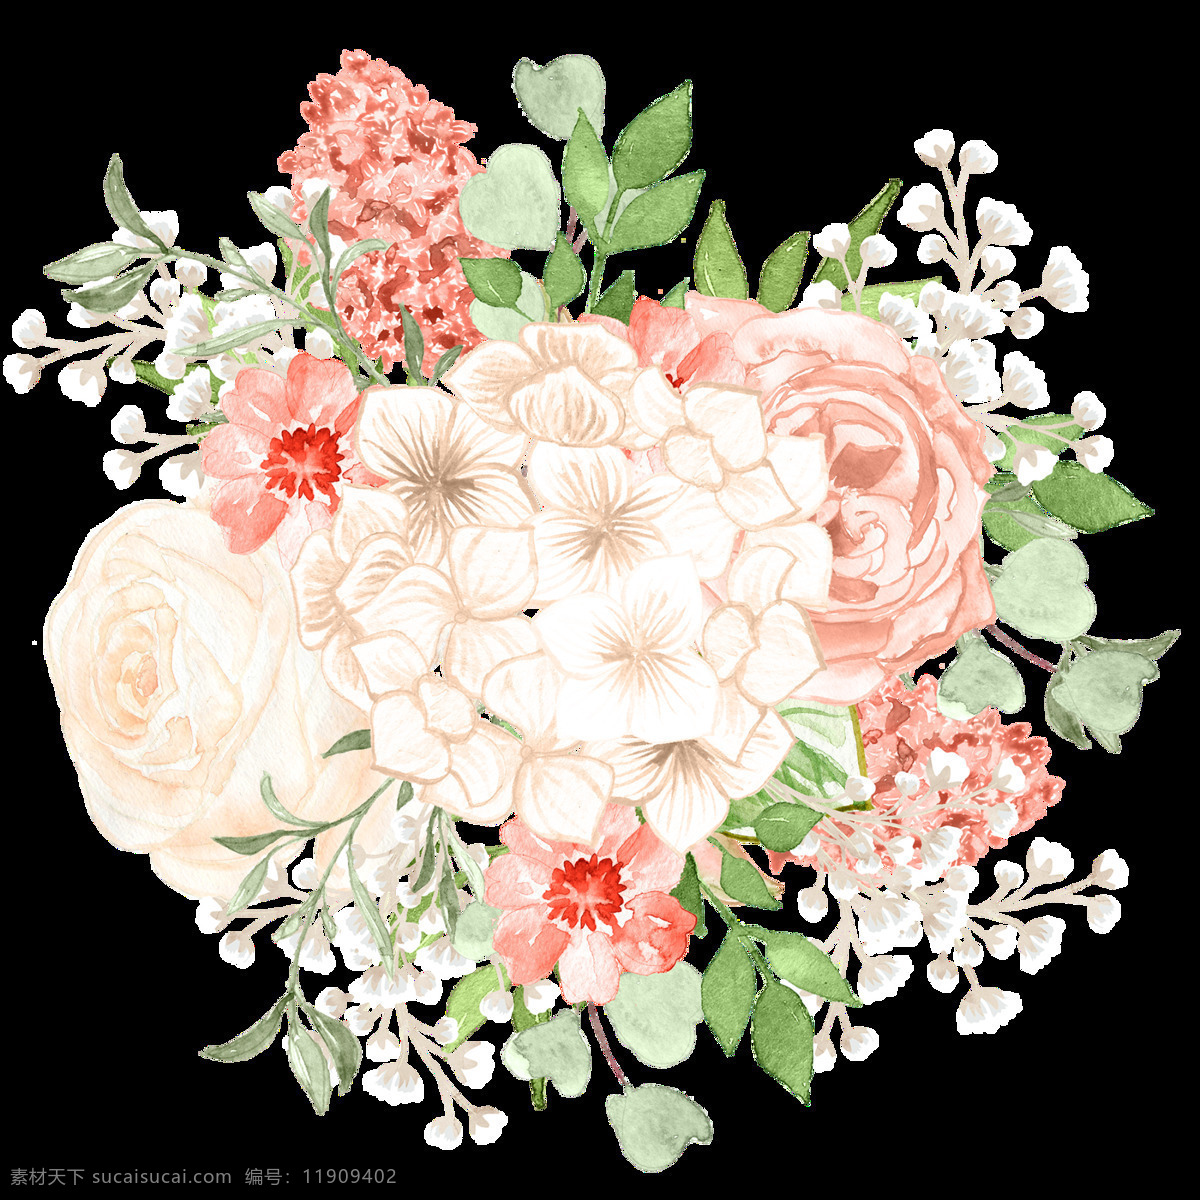 艳丽 花卉 点缀 卡通 透明 绽放 装饰 设计素材 背景素材